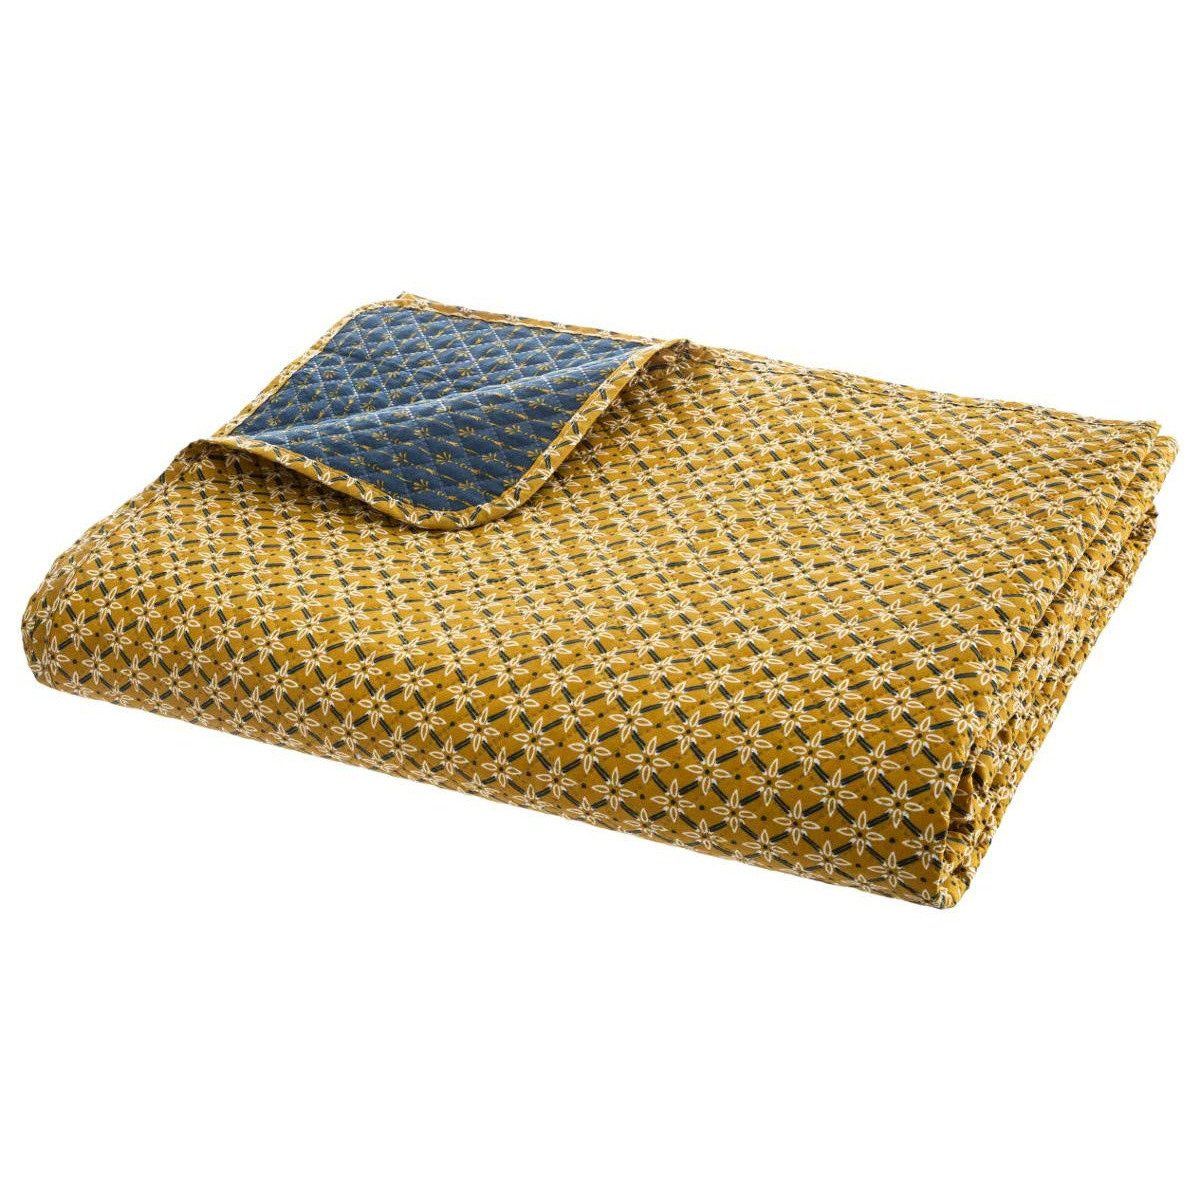 Přehoz na postel, oboustranná prošívaná, žluto-námořnická modř, 240 x 220 cm - EMAKO.CZ s.r.o.